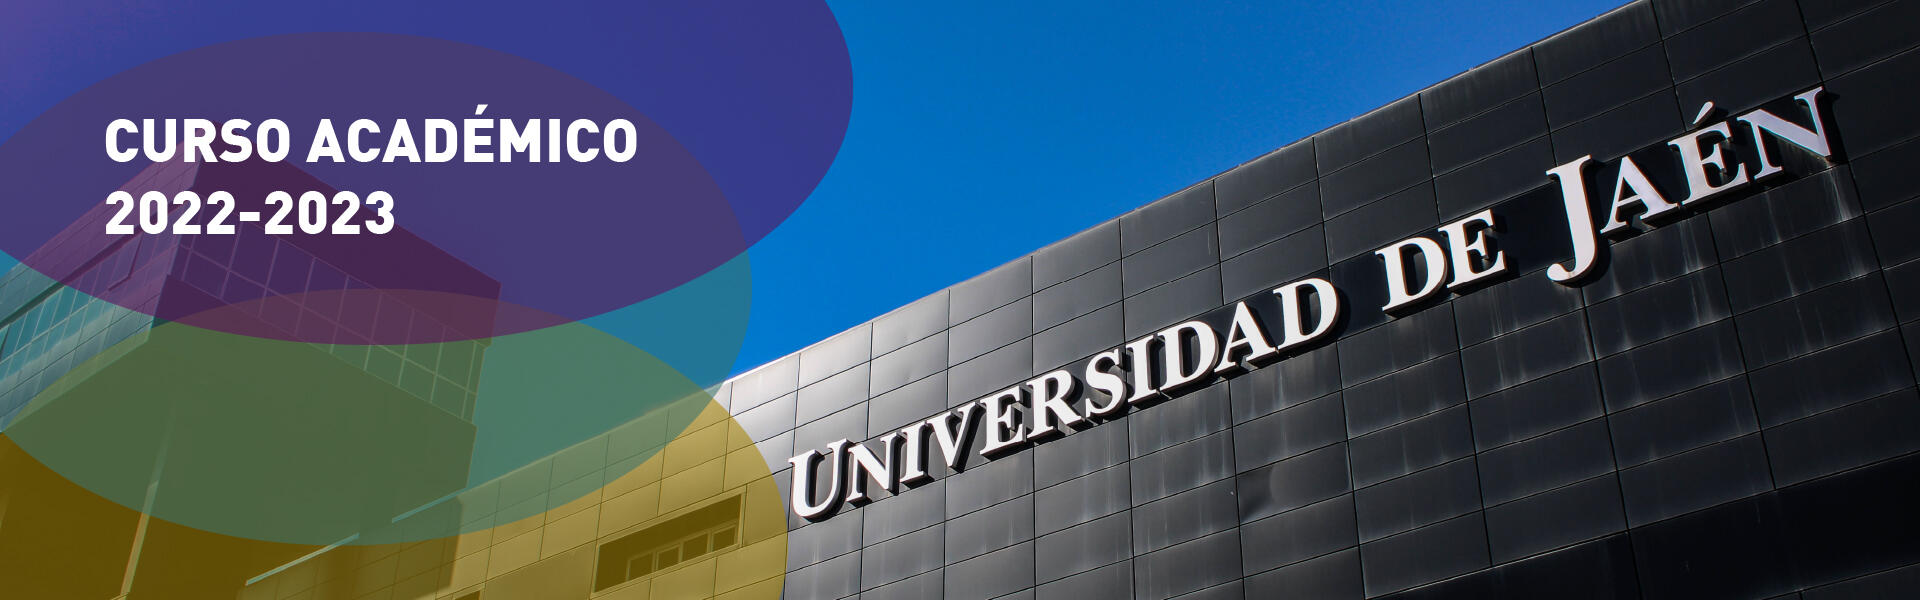 Curso académico 2022-2023 en la Universidad de Jaén